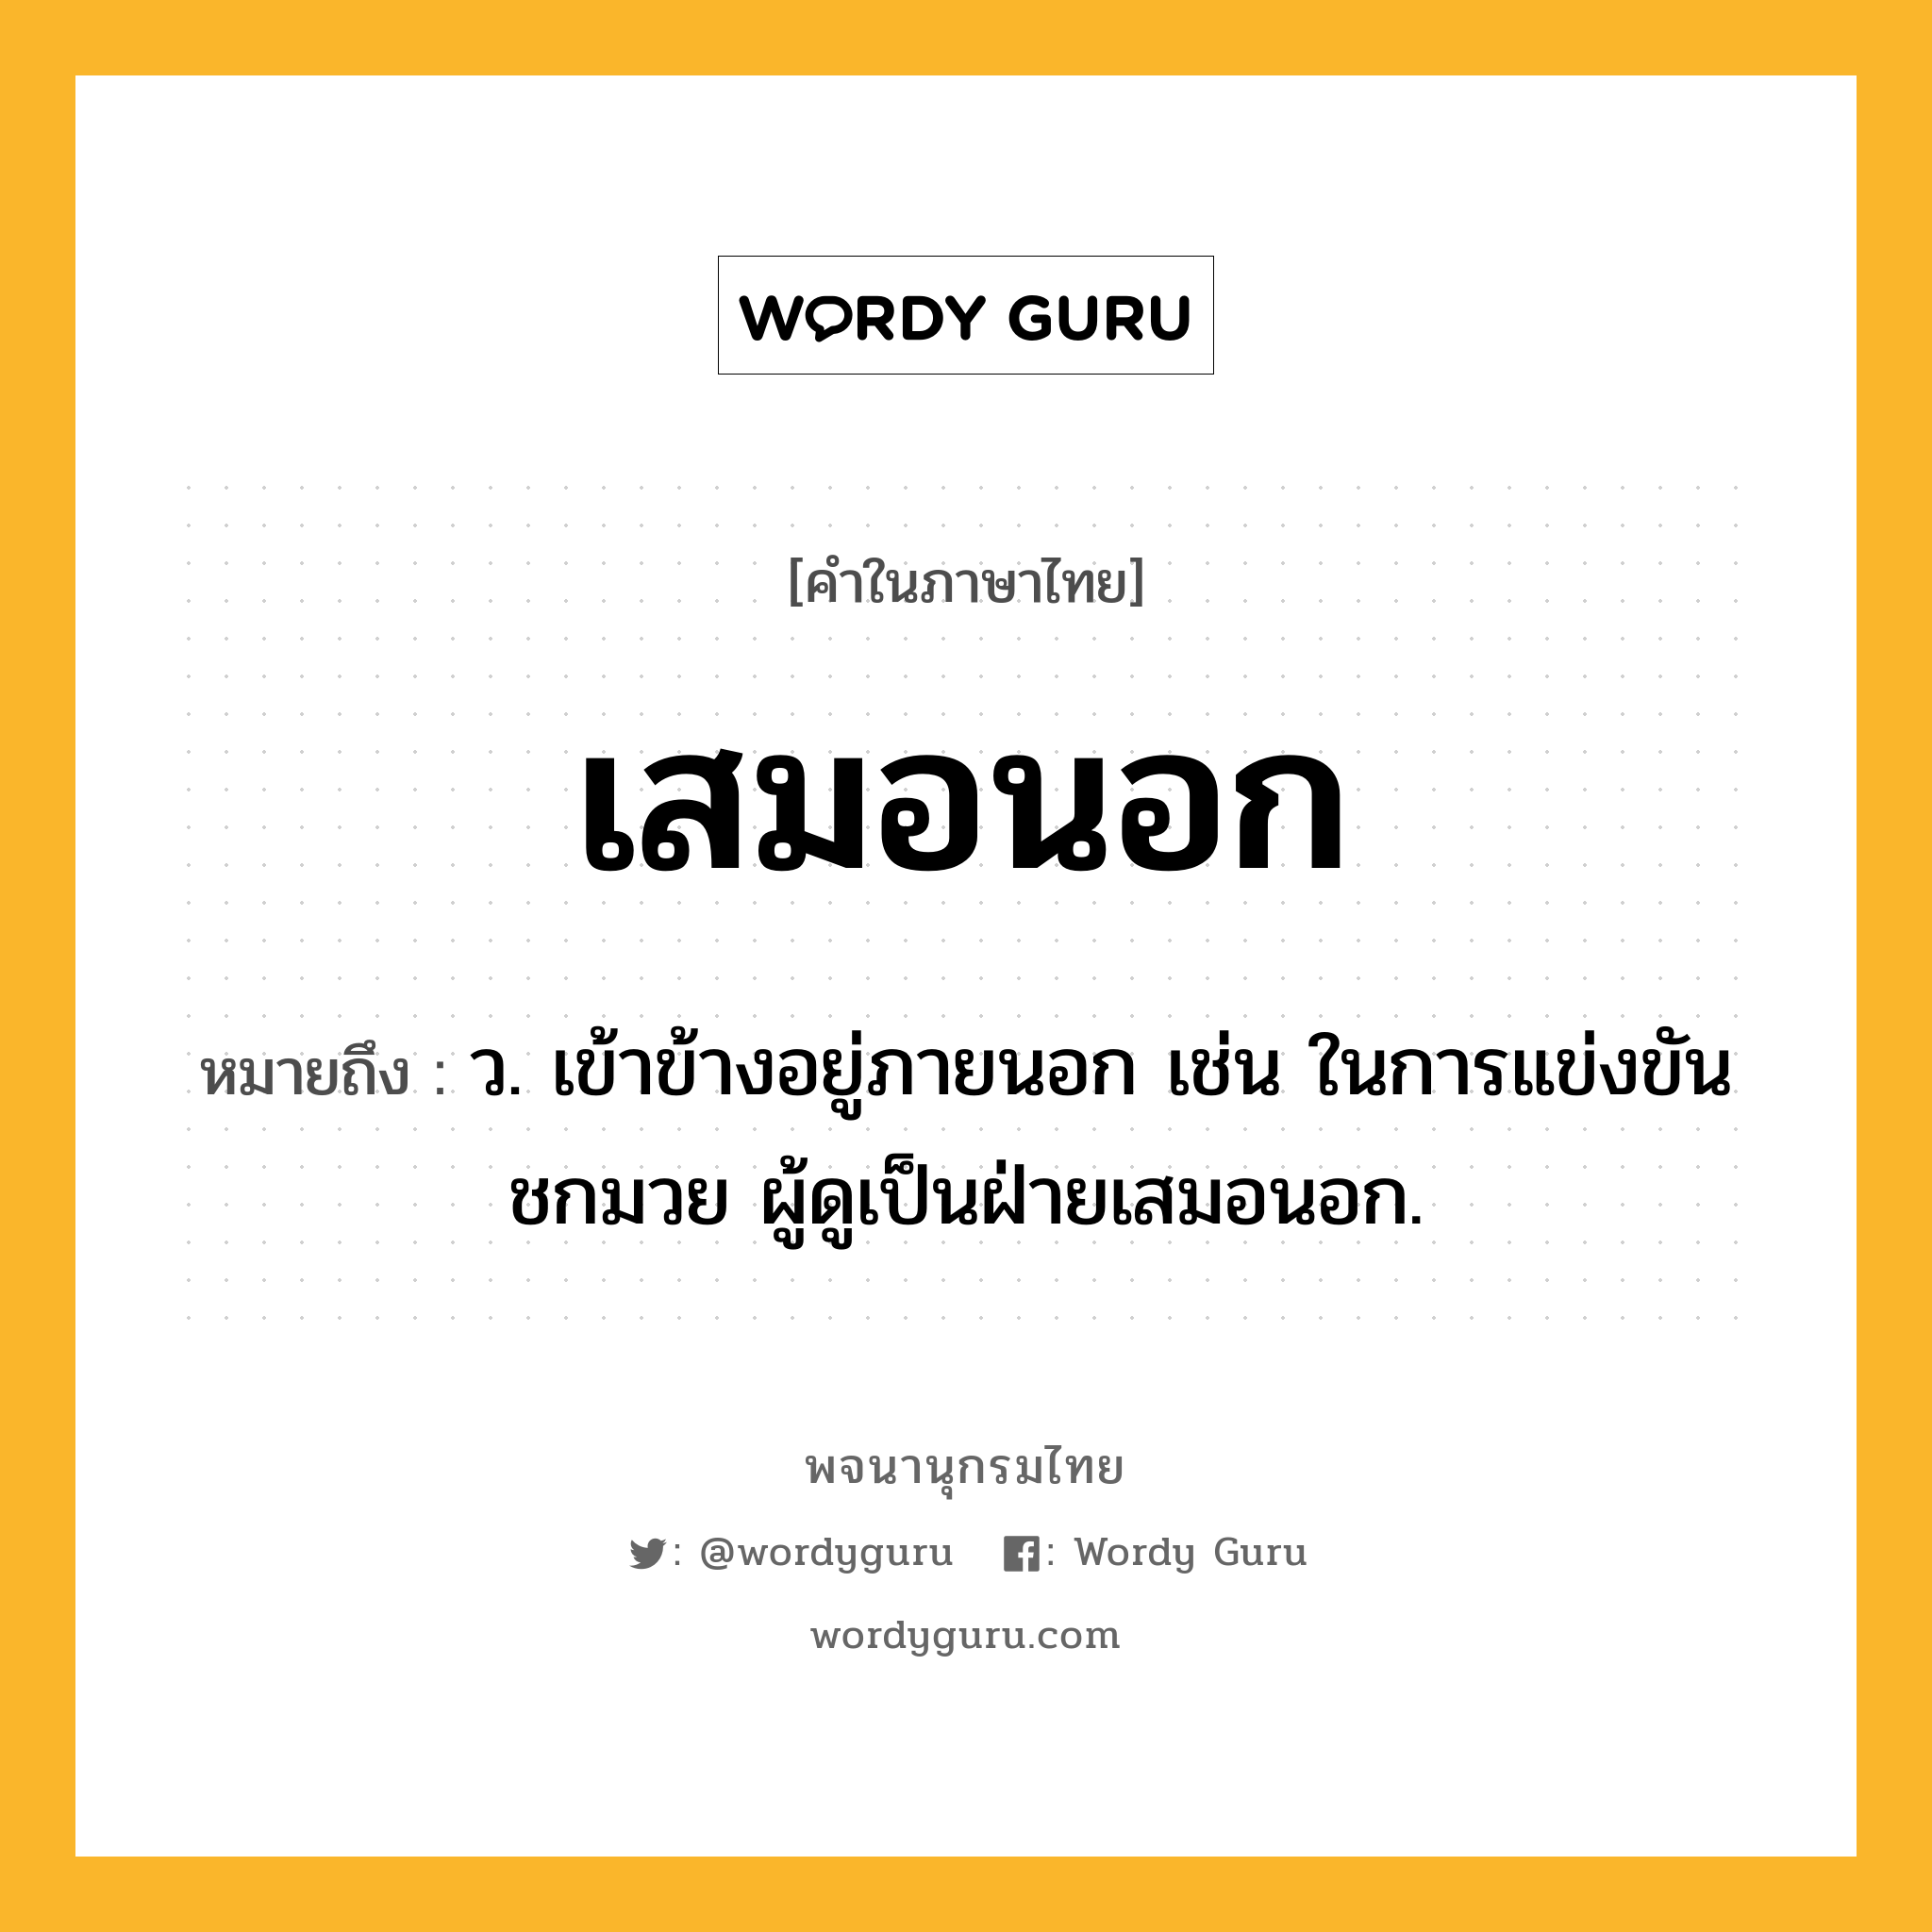 เสมอนอก ความหมาย หมายถึงอะไร?, คำในภาษาไทย เสมอนอก หมายถึง ว. เข้าข้างอยู่ภายนอก เช่น ในการแข่งขันชกมวย ผู้ดูเป็นฝ่ายเสมอนอก.